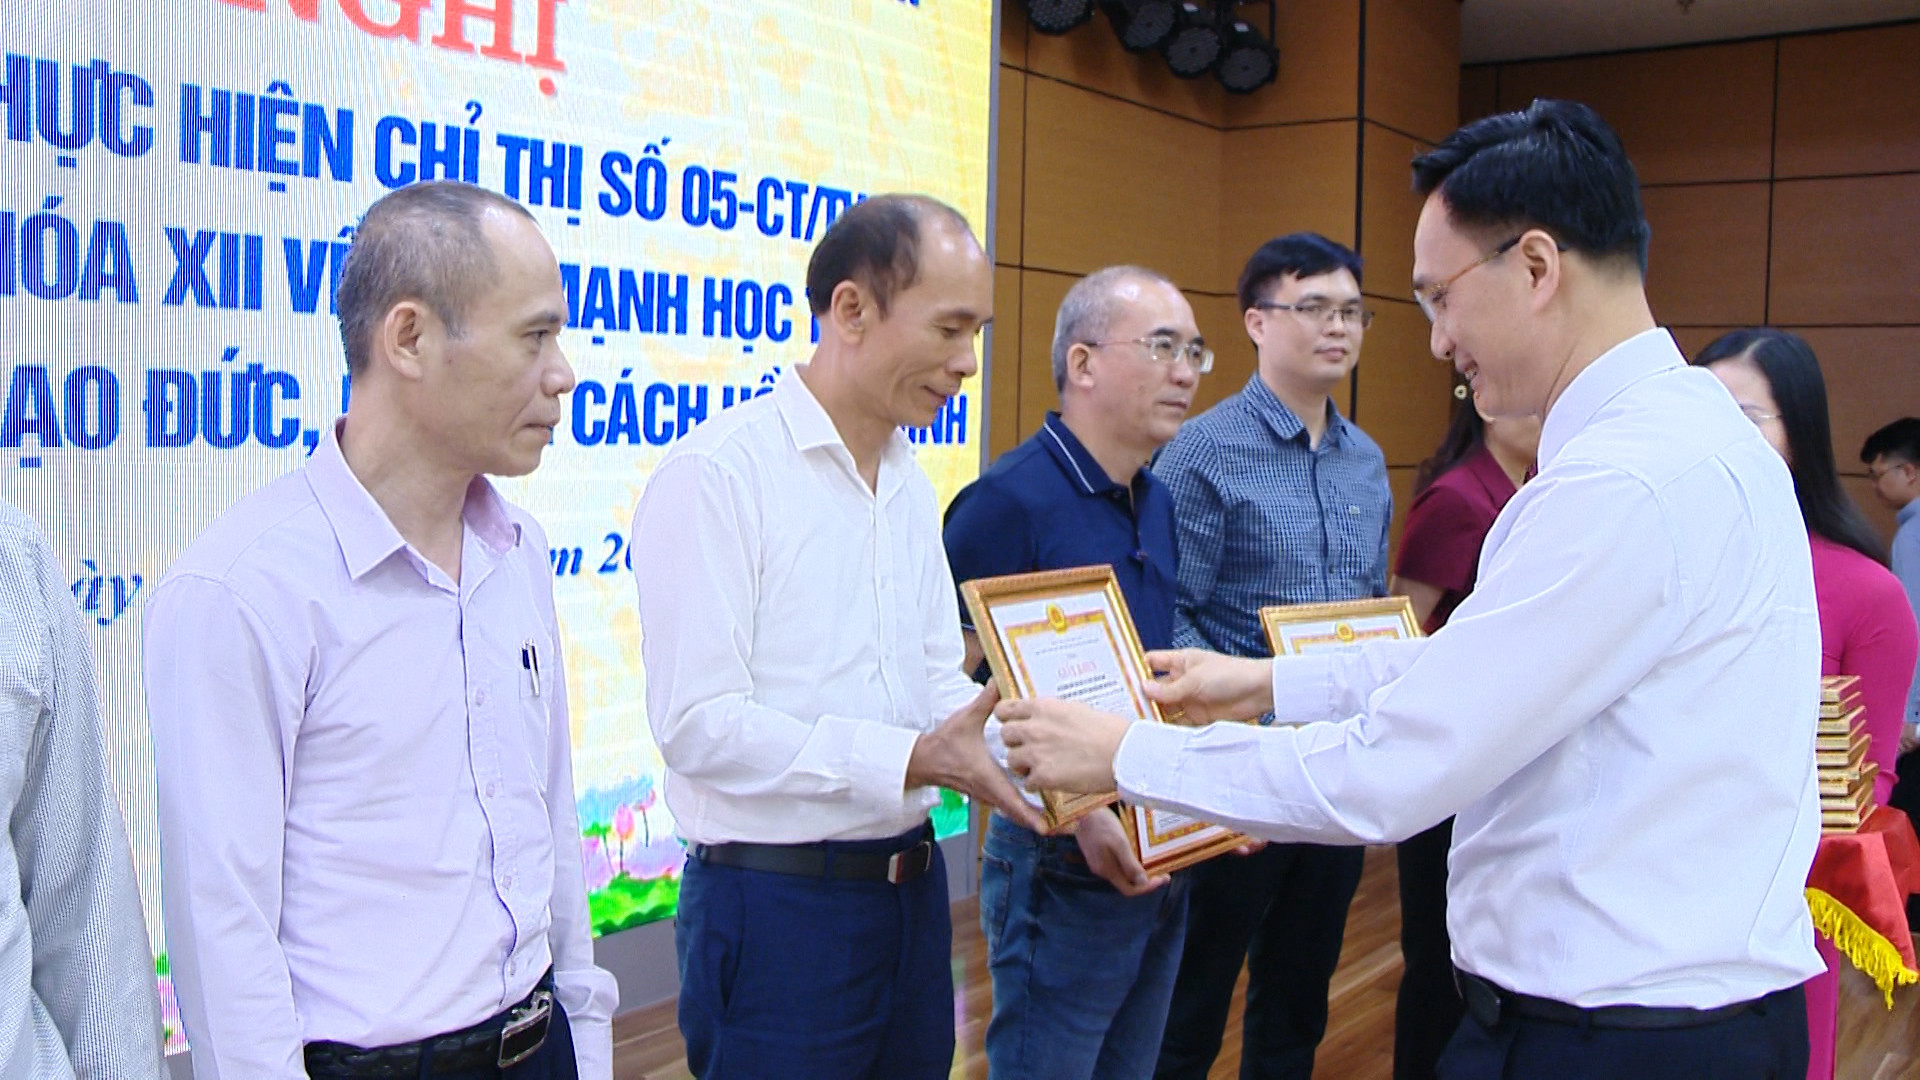 Đảng bộ Khối các cơ quan tỉnh tặng giấy khen cho các tập thể có thành tích xuất sắc trong học tập và làm theo tư tưởng, đạo đức, phong cách Hồ Chí Minh giai đoạn 2016-2021.